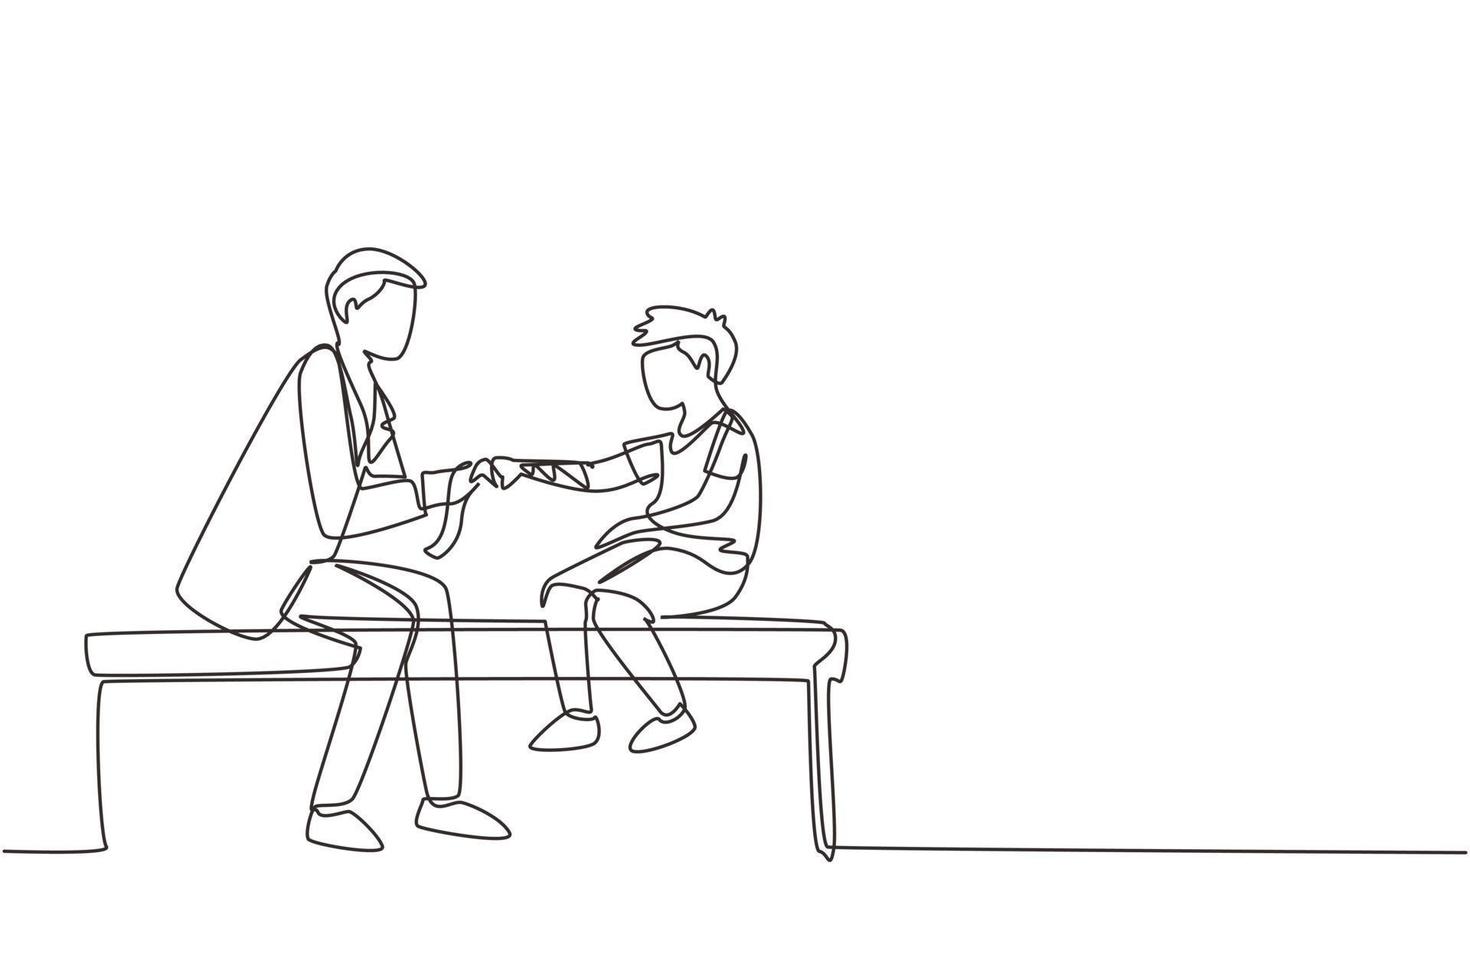 kontinuerlig en rad ritning barnläkare arbetar med liten pojke. ortoped binder pojkens hand. läkare som behandlar barn på läkarmottagning eller sjukhus. enkel rad rita design vektorillustration vektor